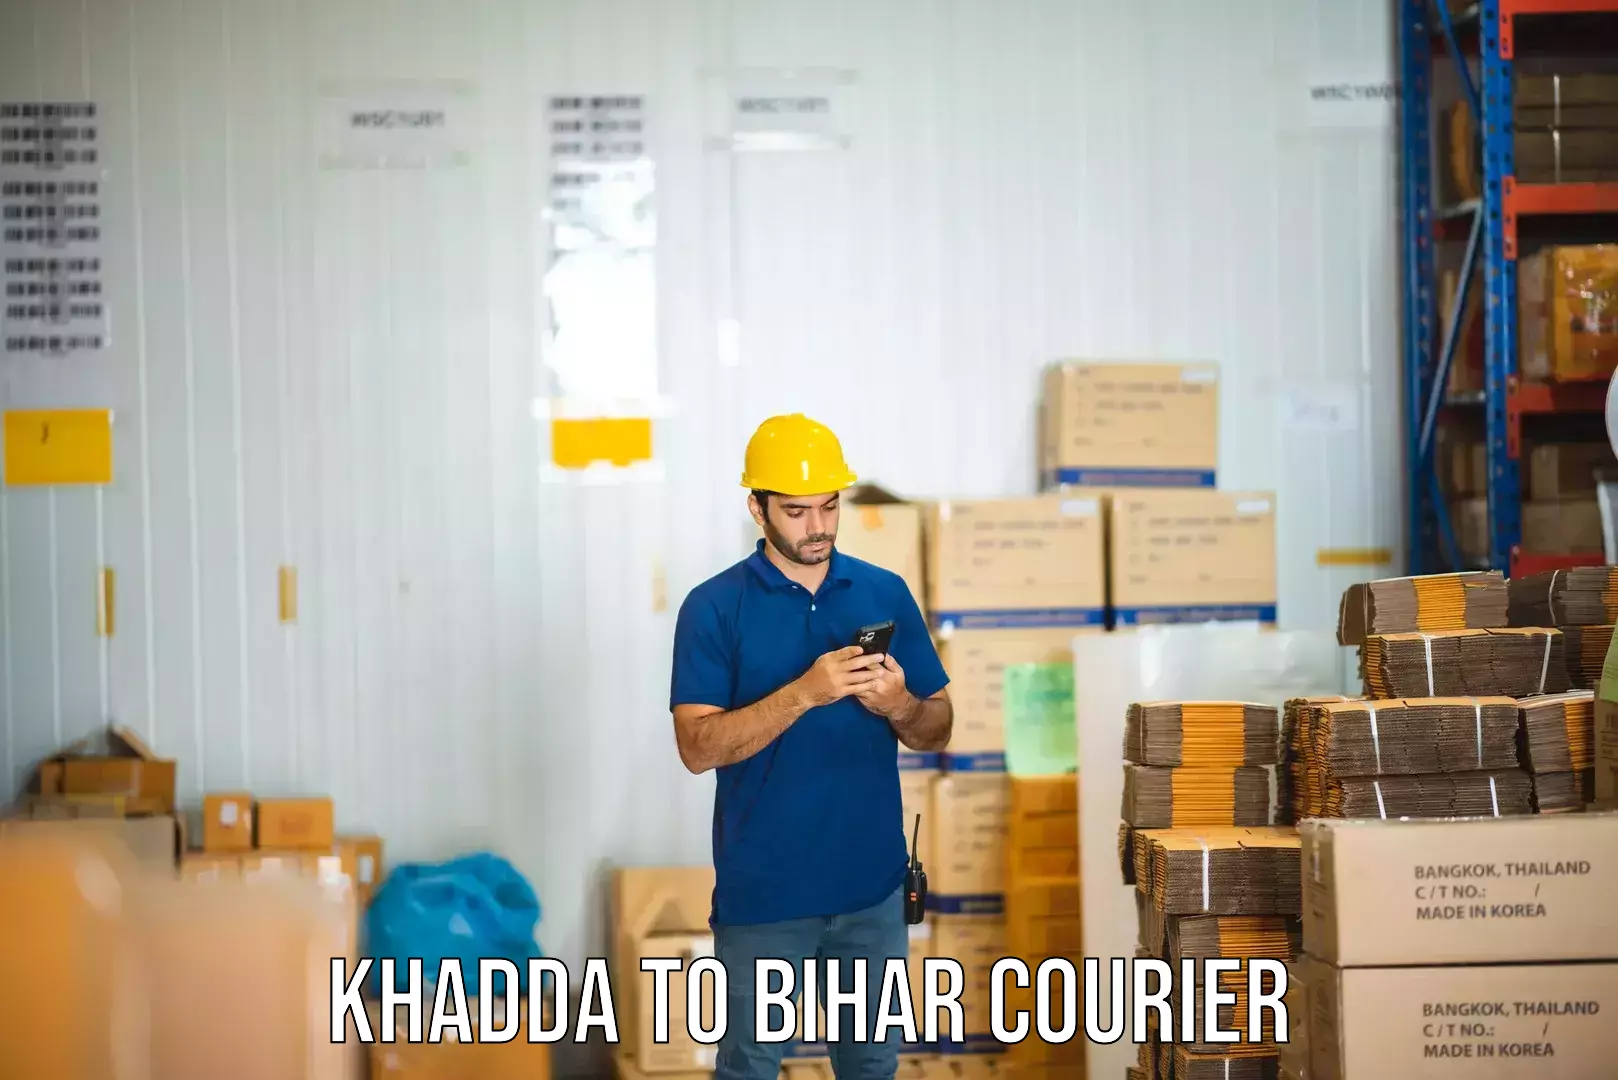 Comprehensive logistics solutions Khadda to Bihar